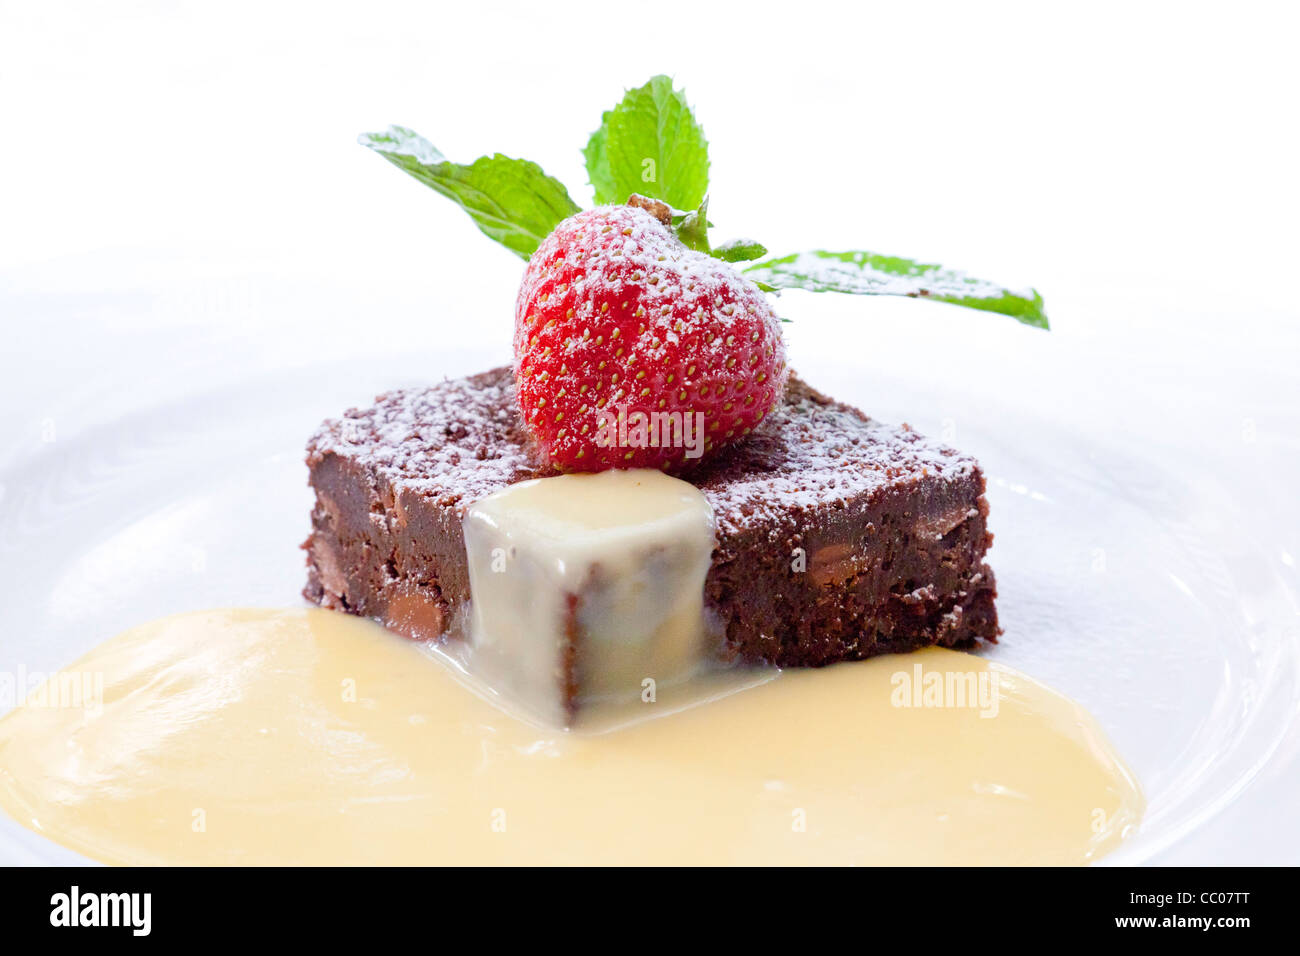 Brownie de chocolate con fresa cortes y servido con natillas Foto de stock